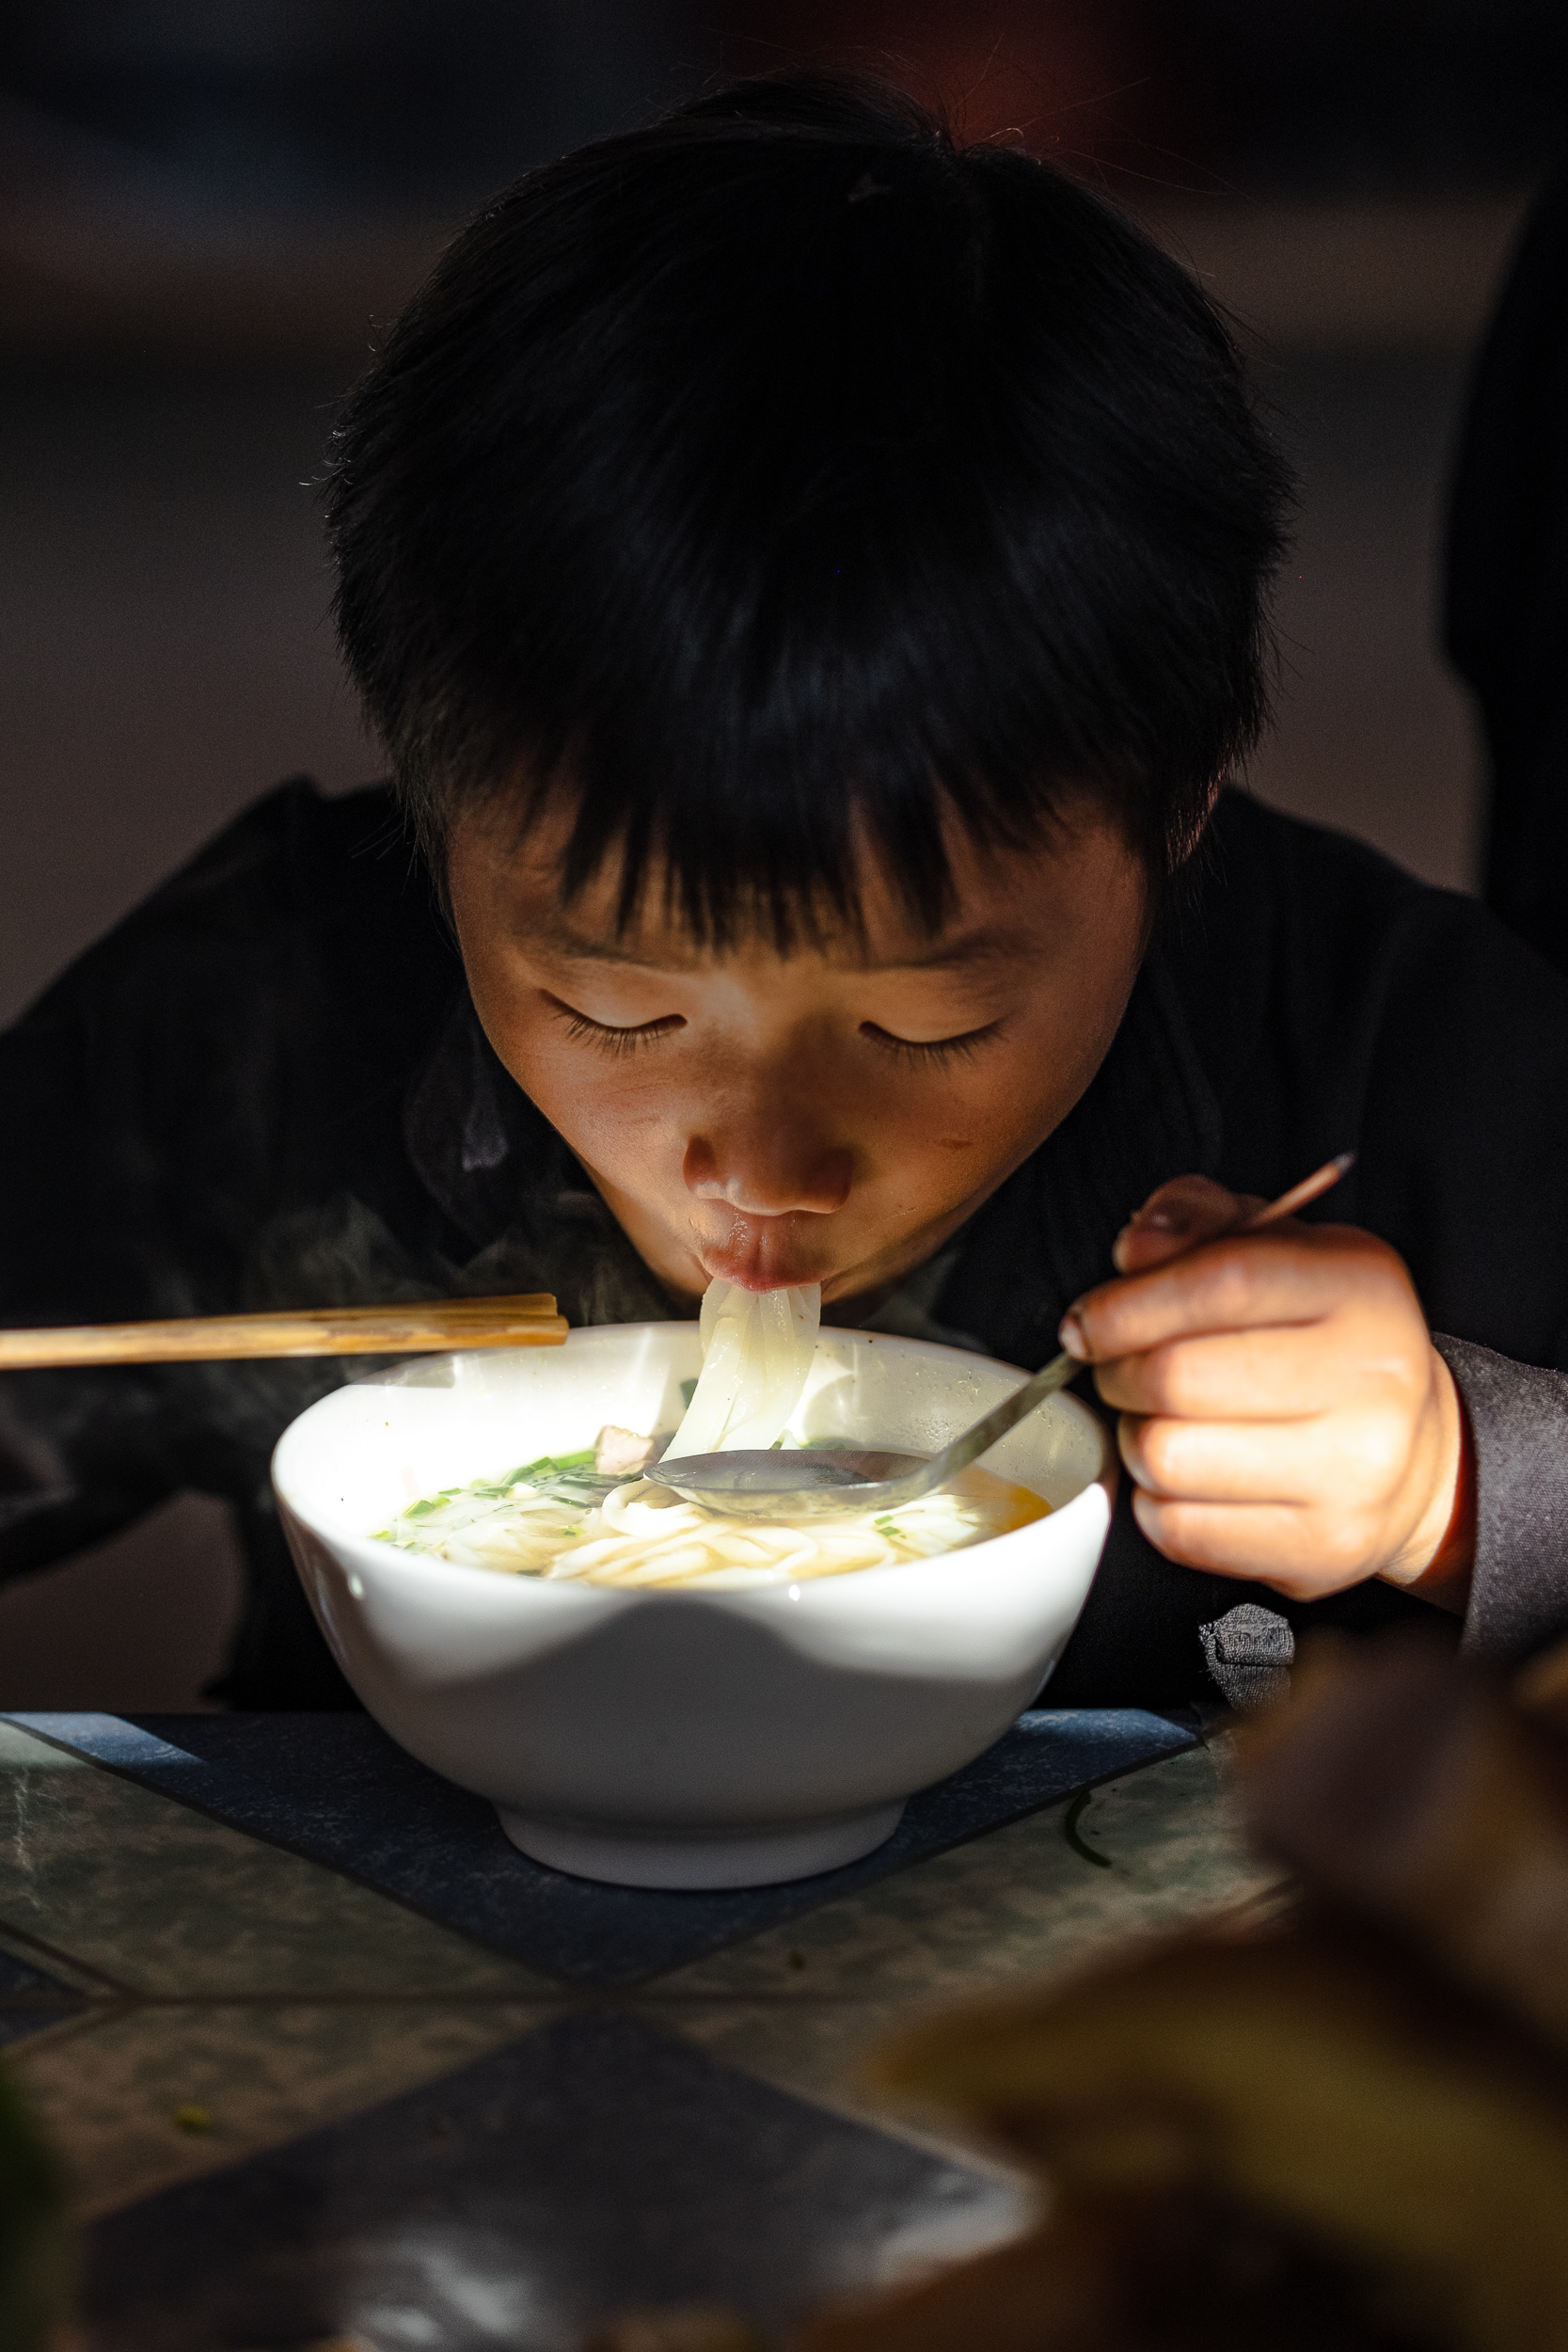  A boy enjoying his pho noodles in Dong van market in Vietnam. 